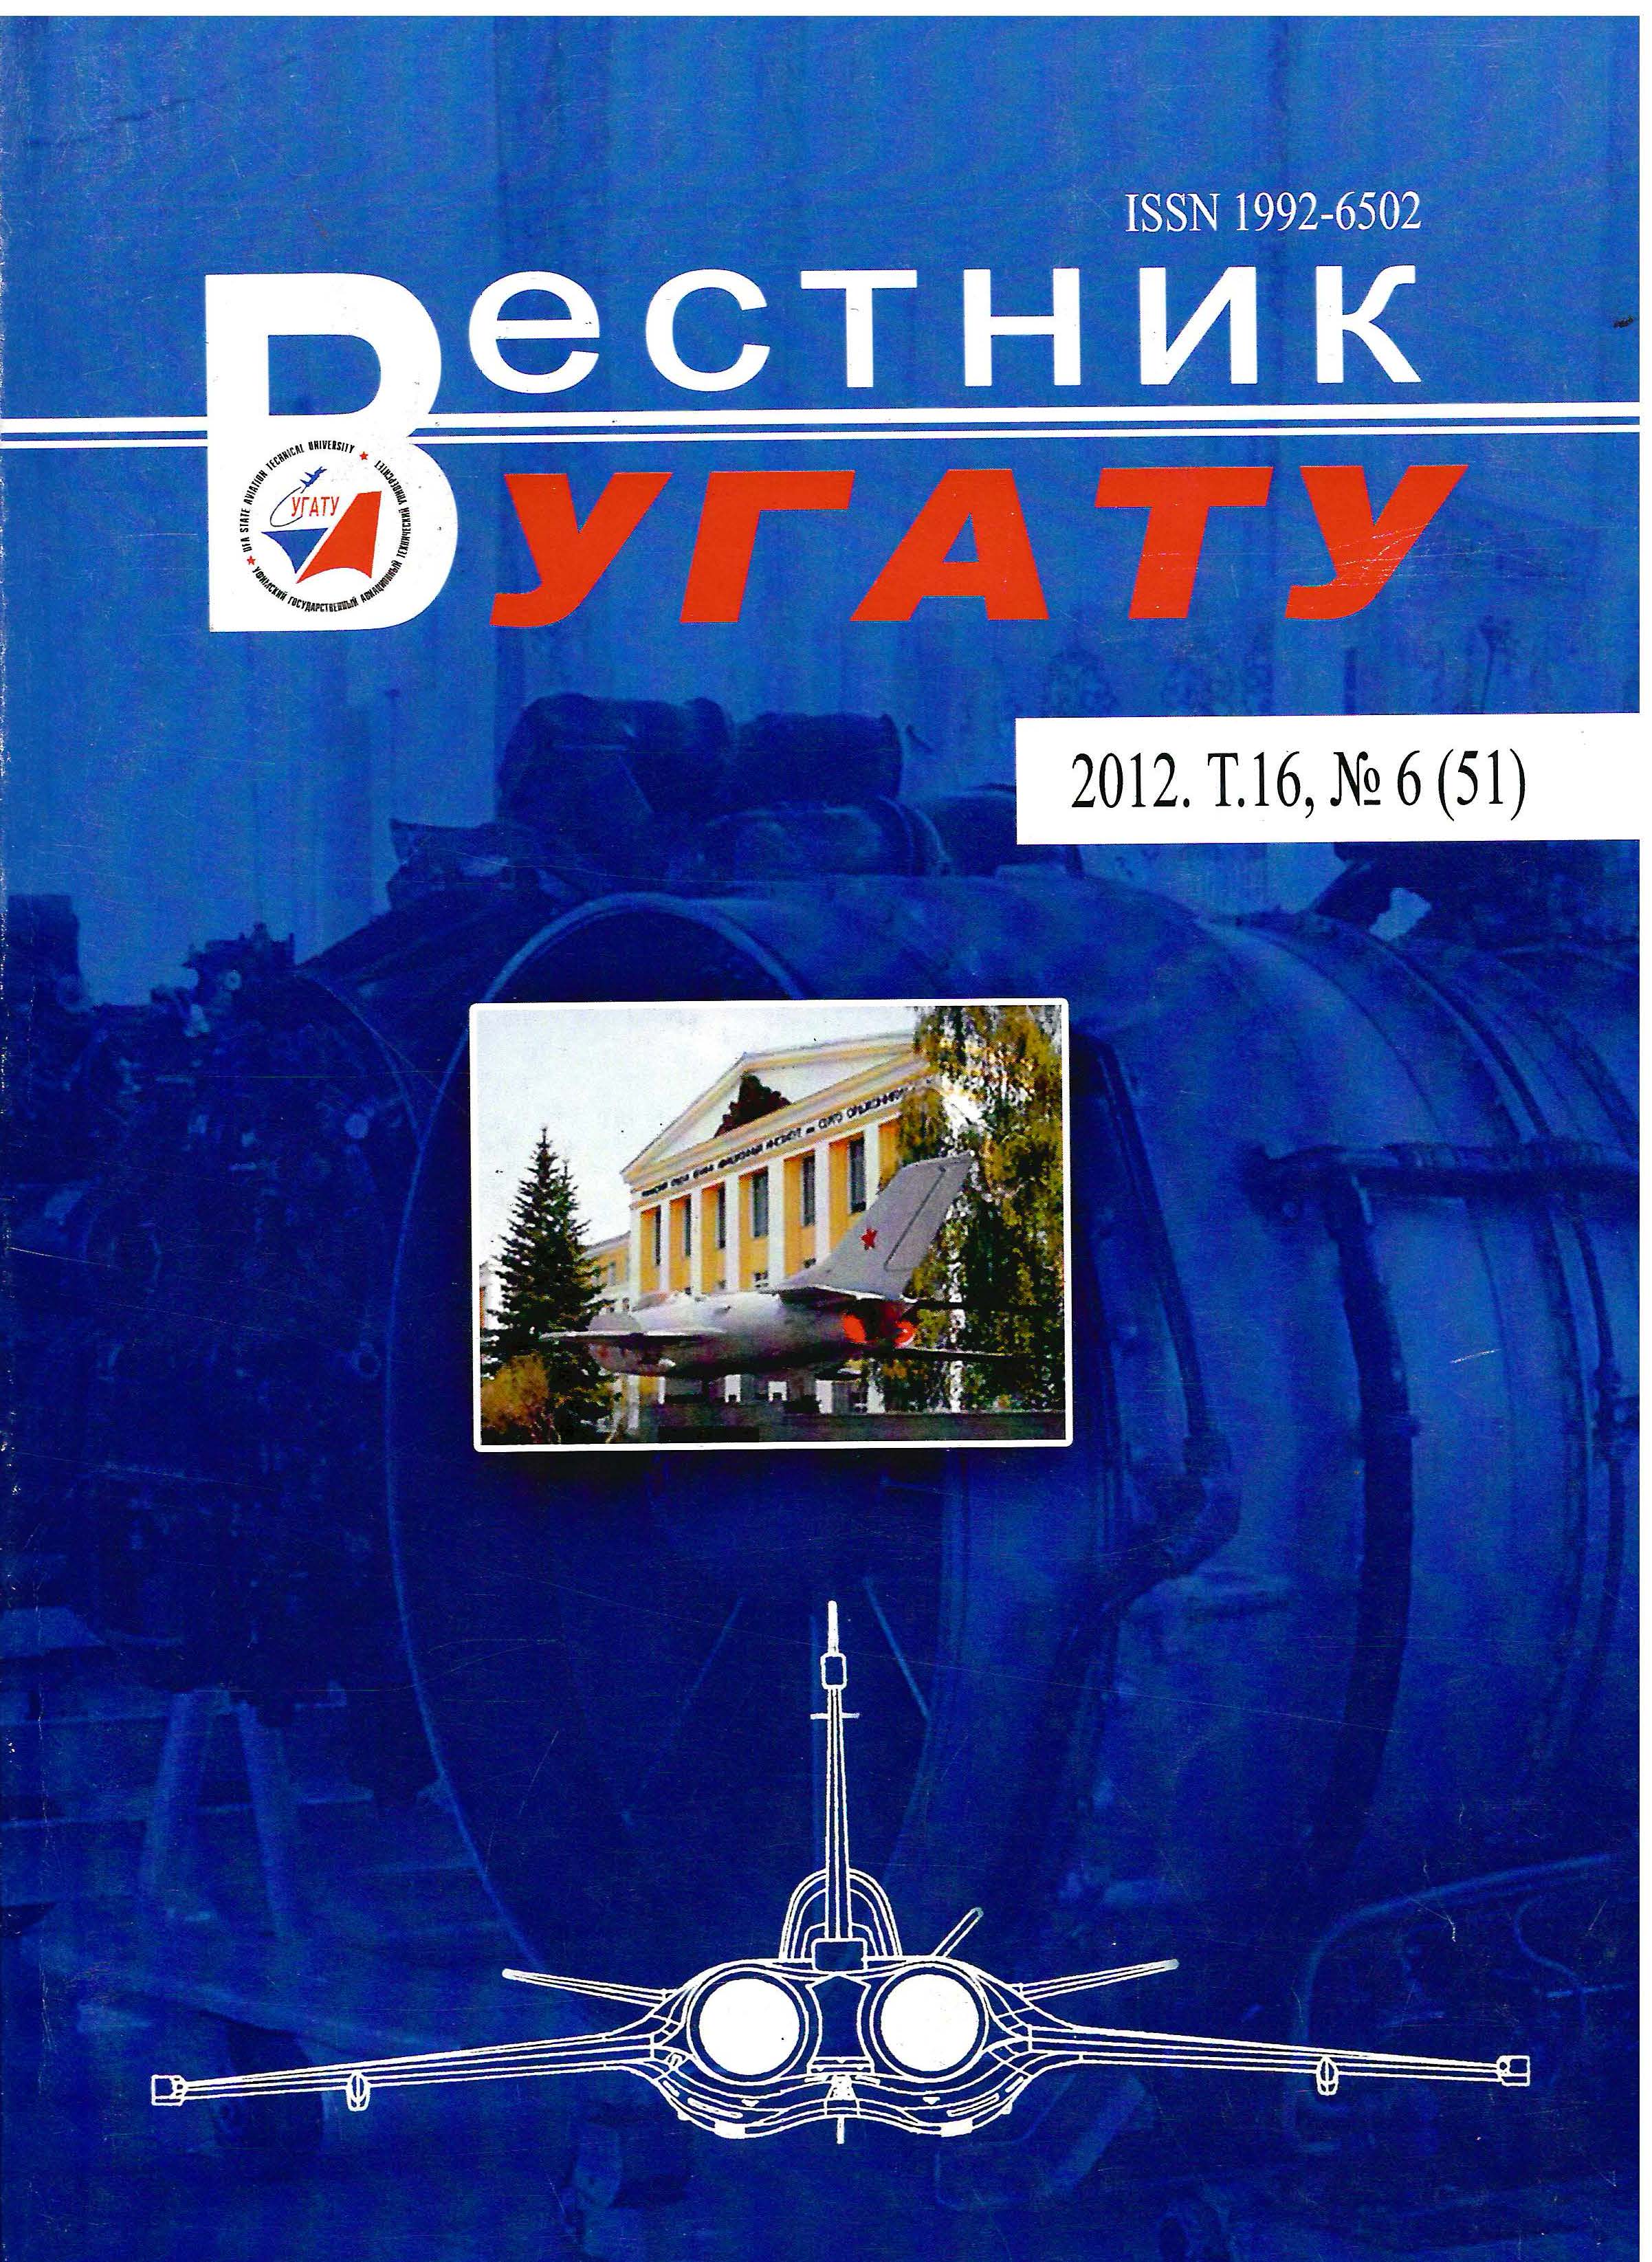 					View Vol. 16 No. 6 (51) (2012): Вестник УГАТУ
				